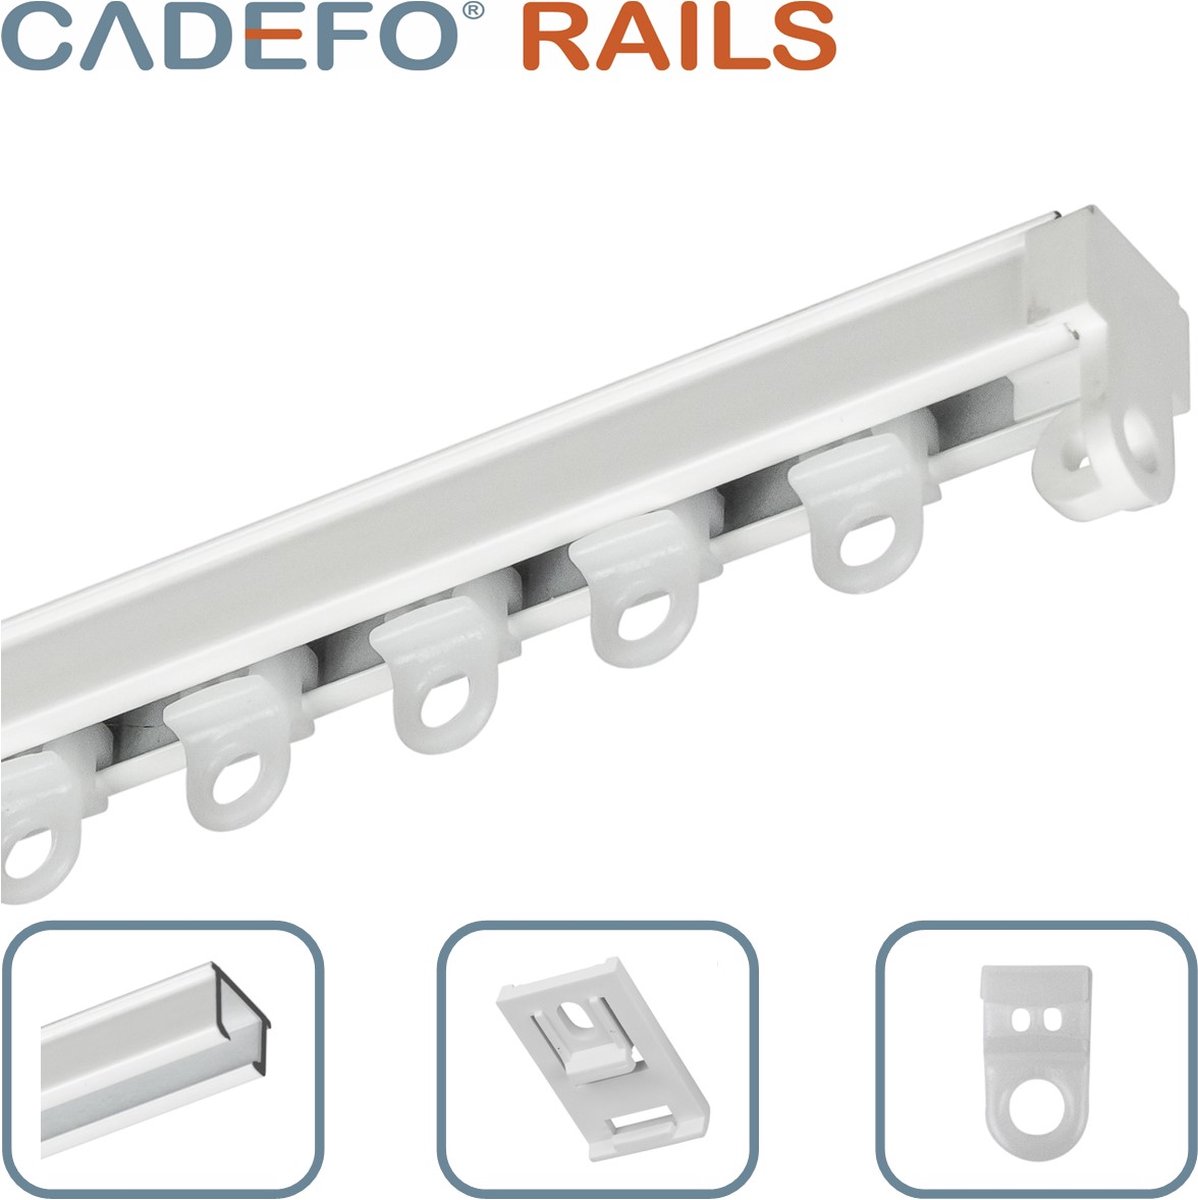 CADEFO RAILS (501 - 550 cm) Gordijnrails - Compleet op maat! - UIT 1 STUK - Leverbaar tot 6 meter - Plafondbevestiging - Lengte 522 cm